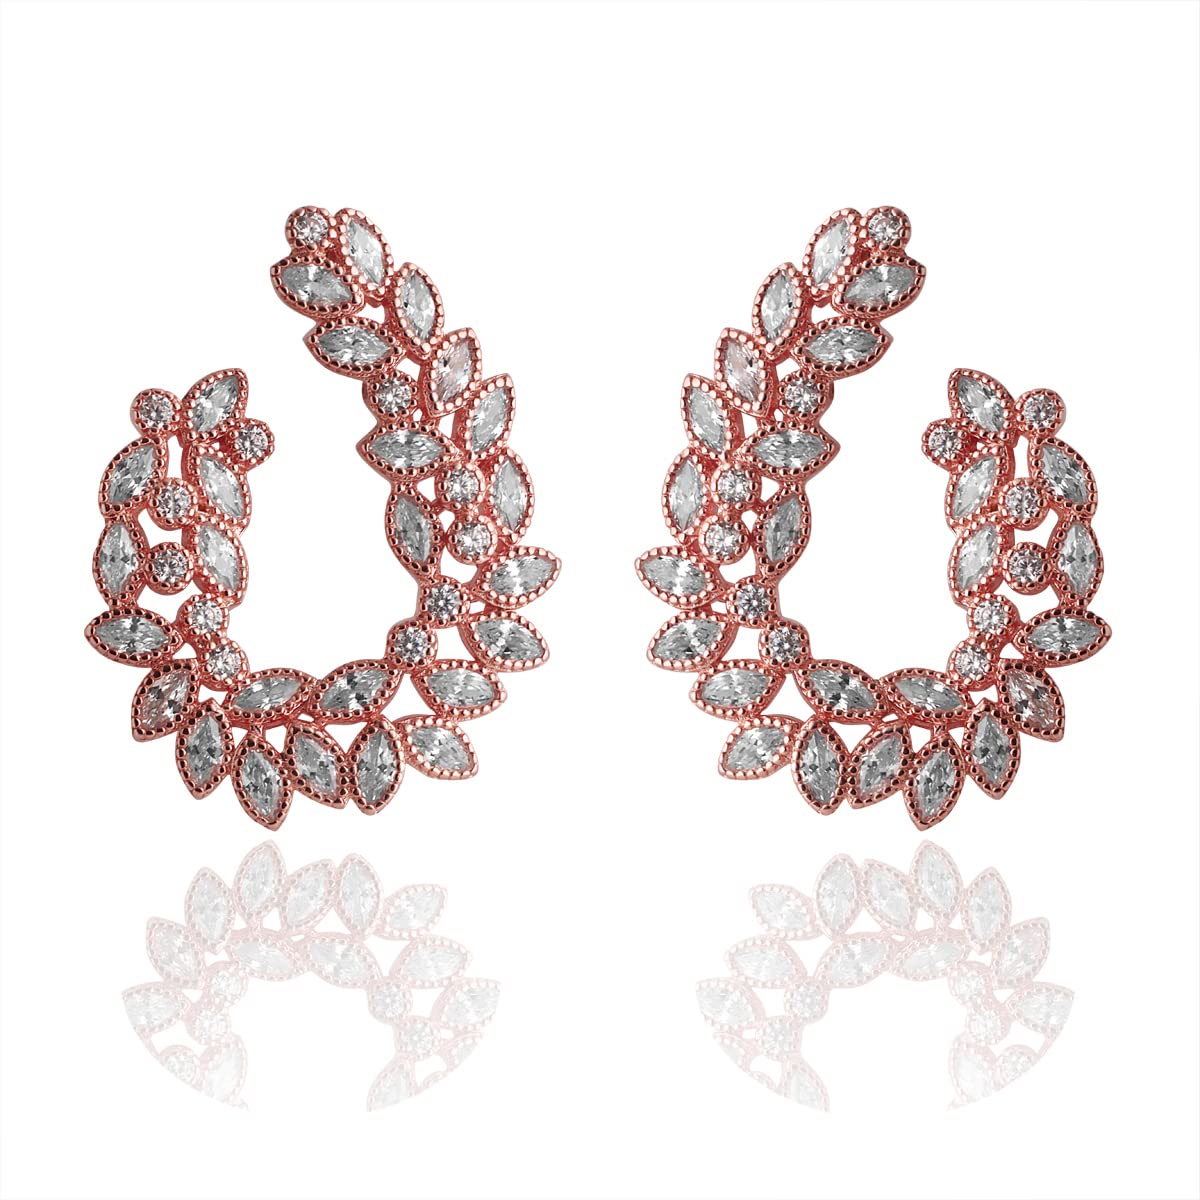 Swarovski Crystal Stones Earrings